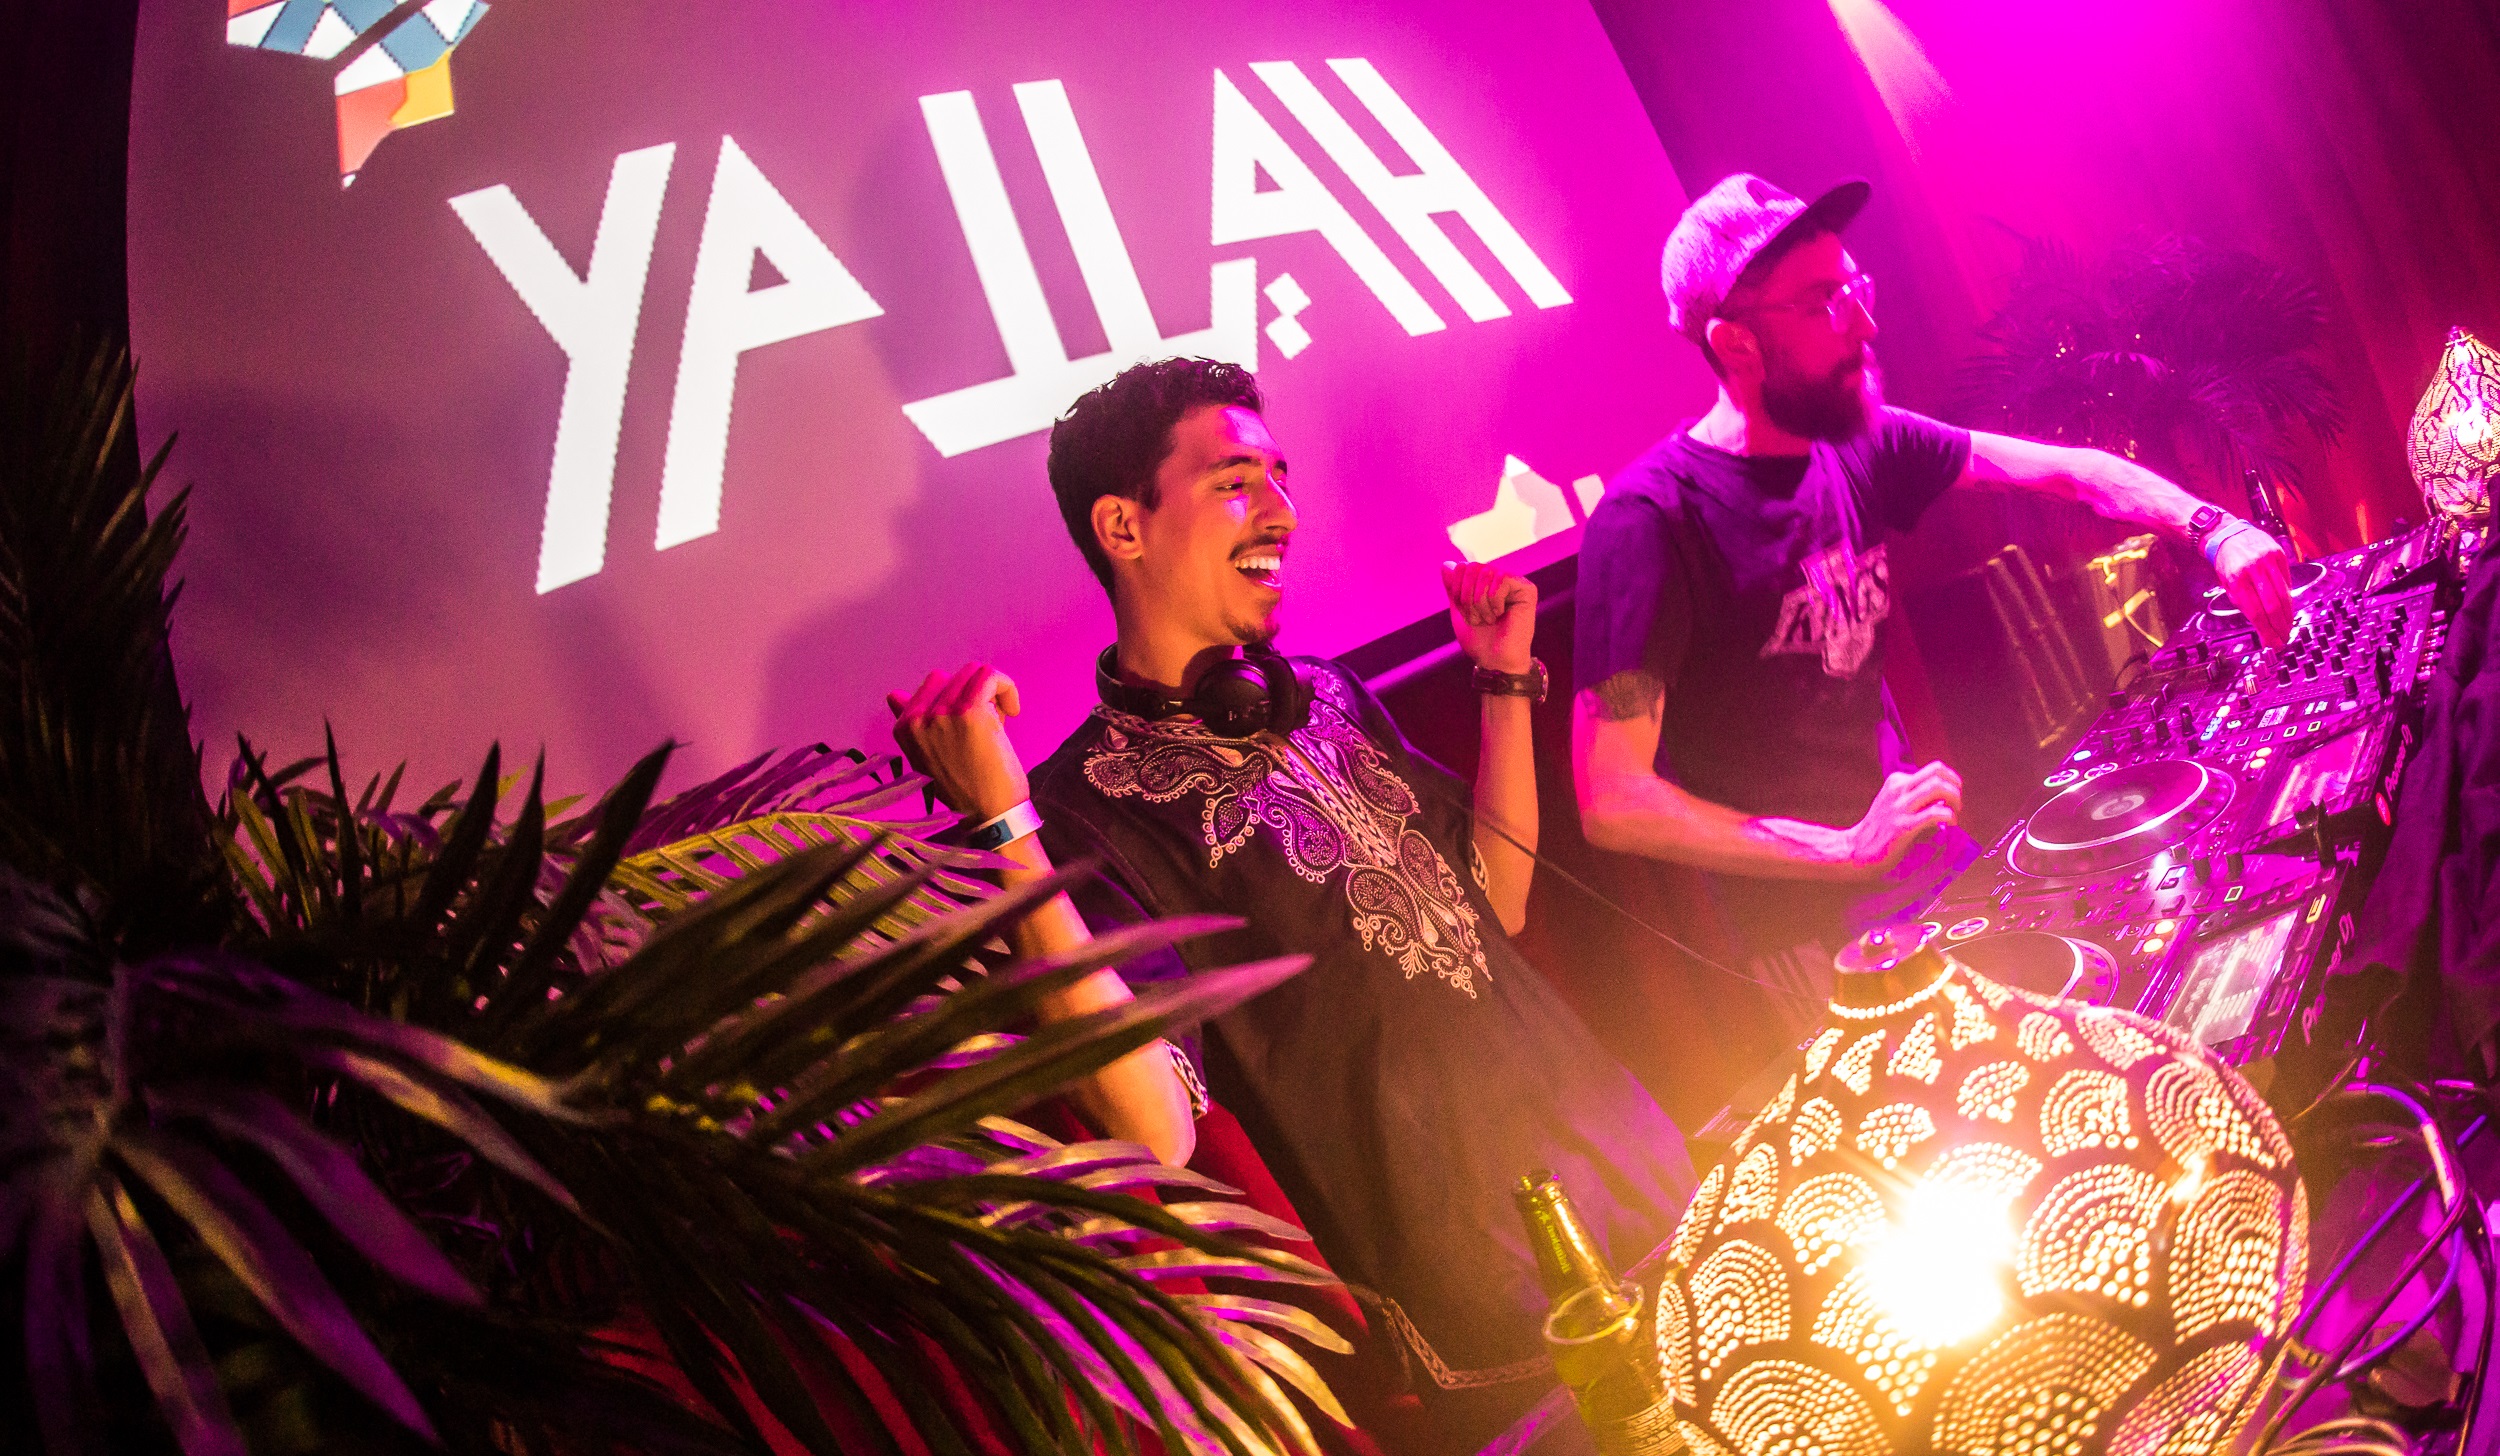 Castro, Ken Vila & DaVinci (live) & Yallah! Yallah! DJ's